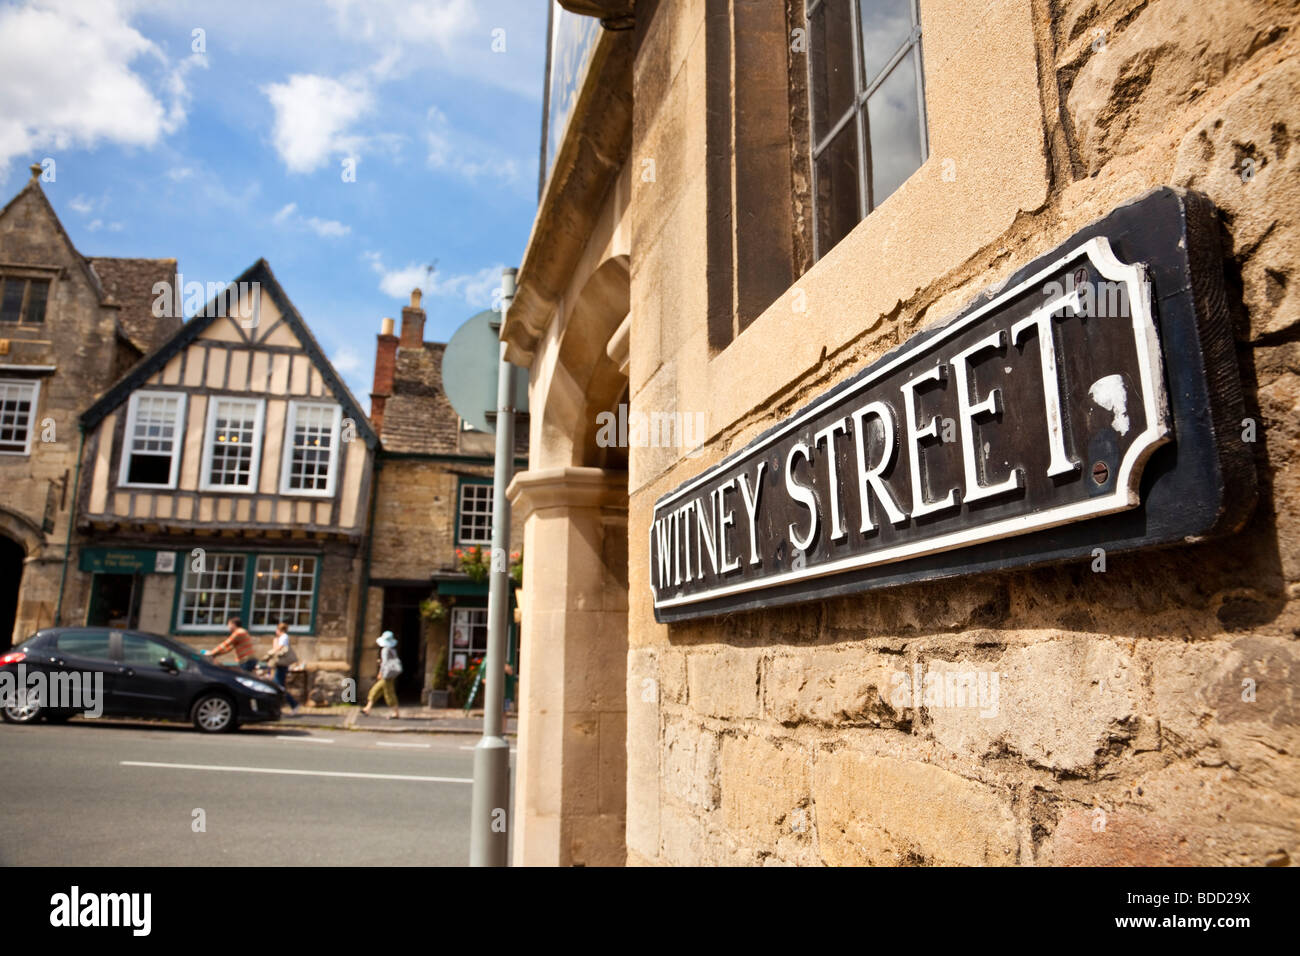 Cartel con el nombre de la calle en inglés cerca de Burford, Oxfordshire, Inglaterra, Reino Unido. Foto de stock